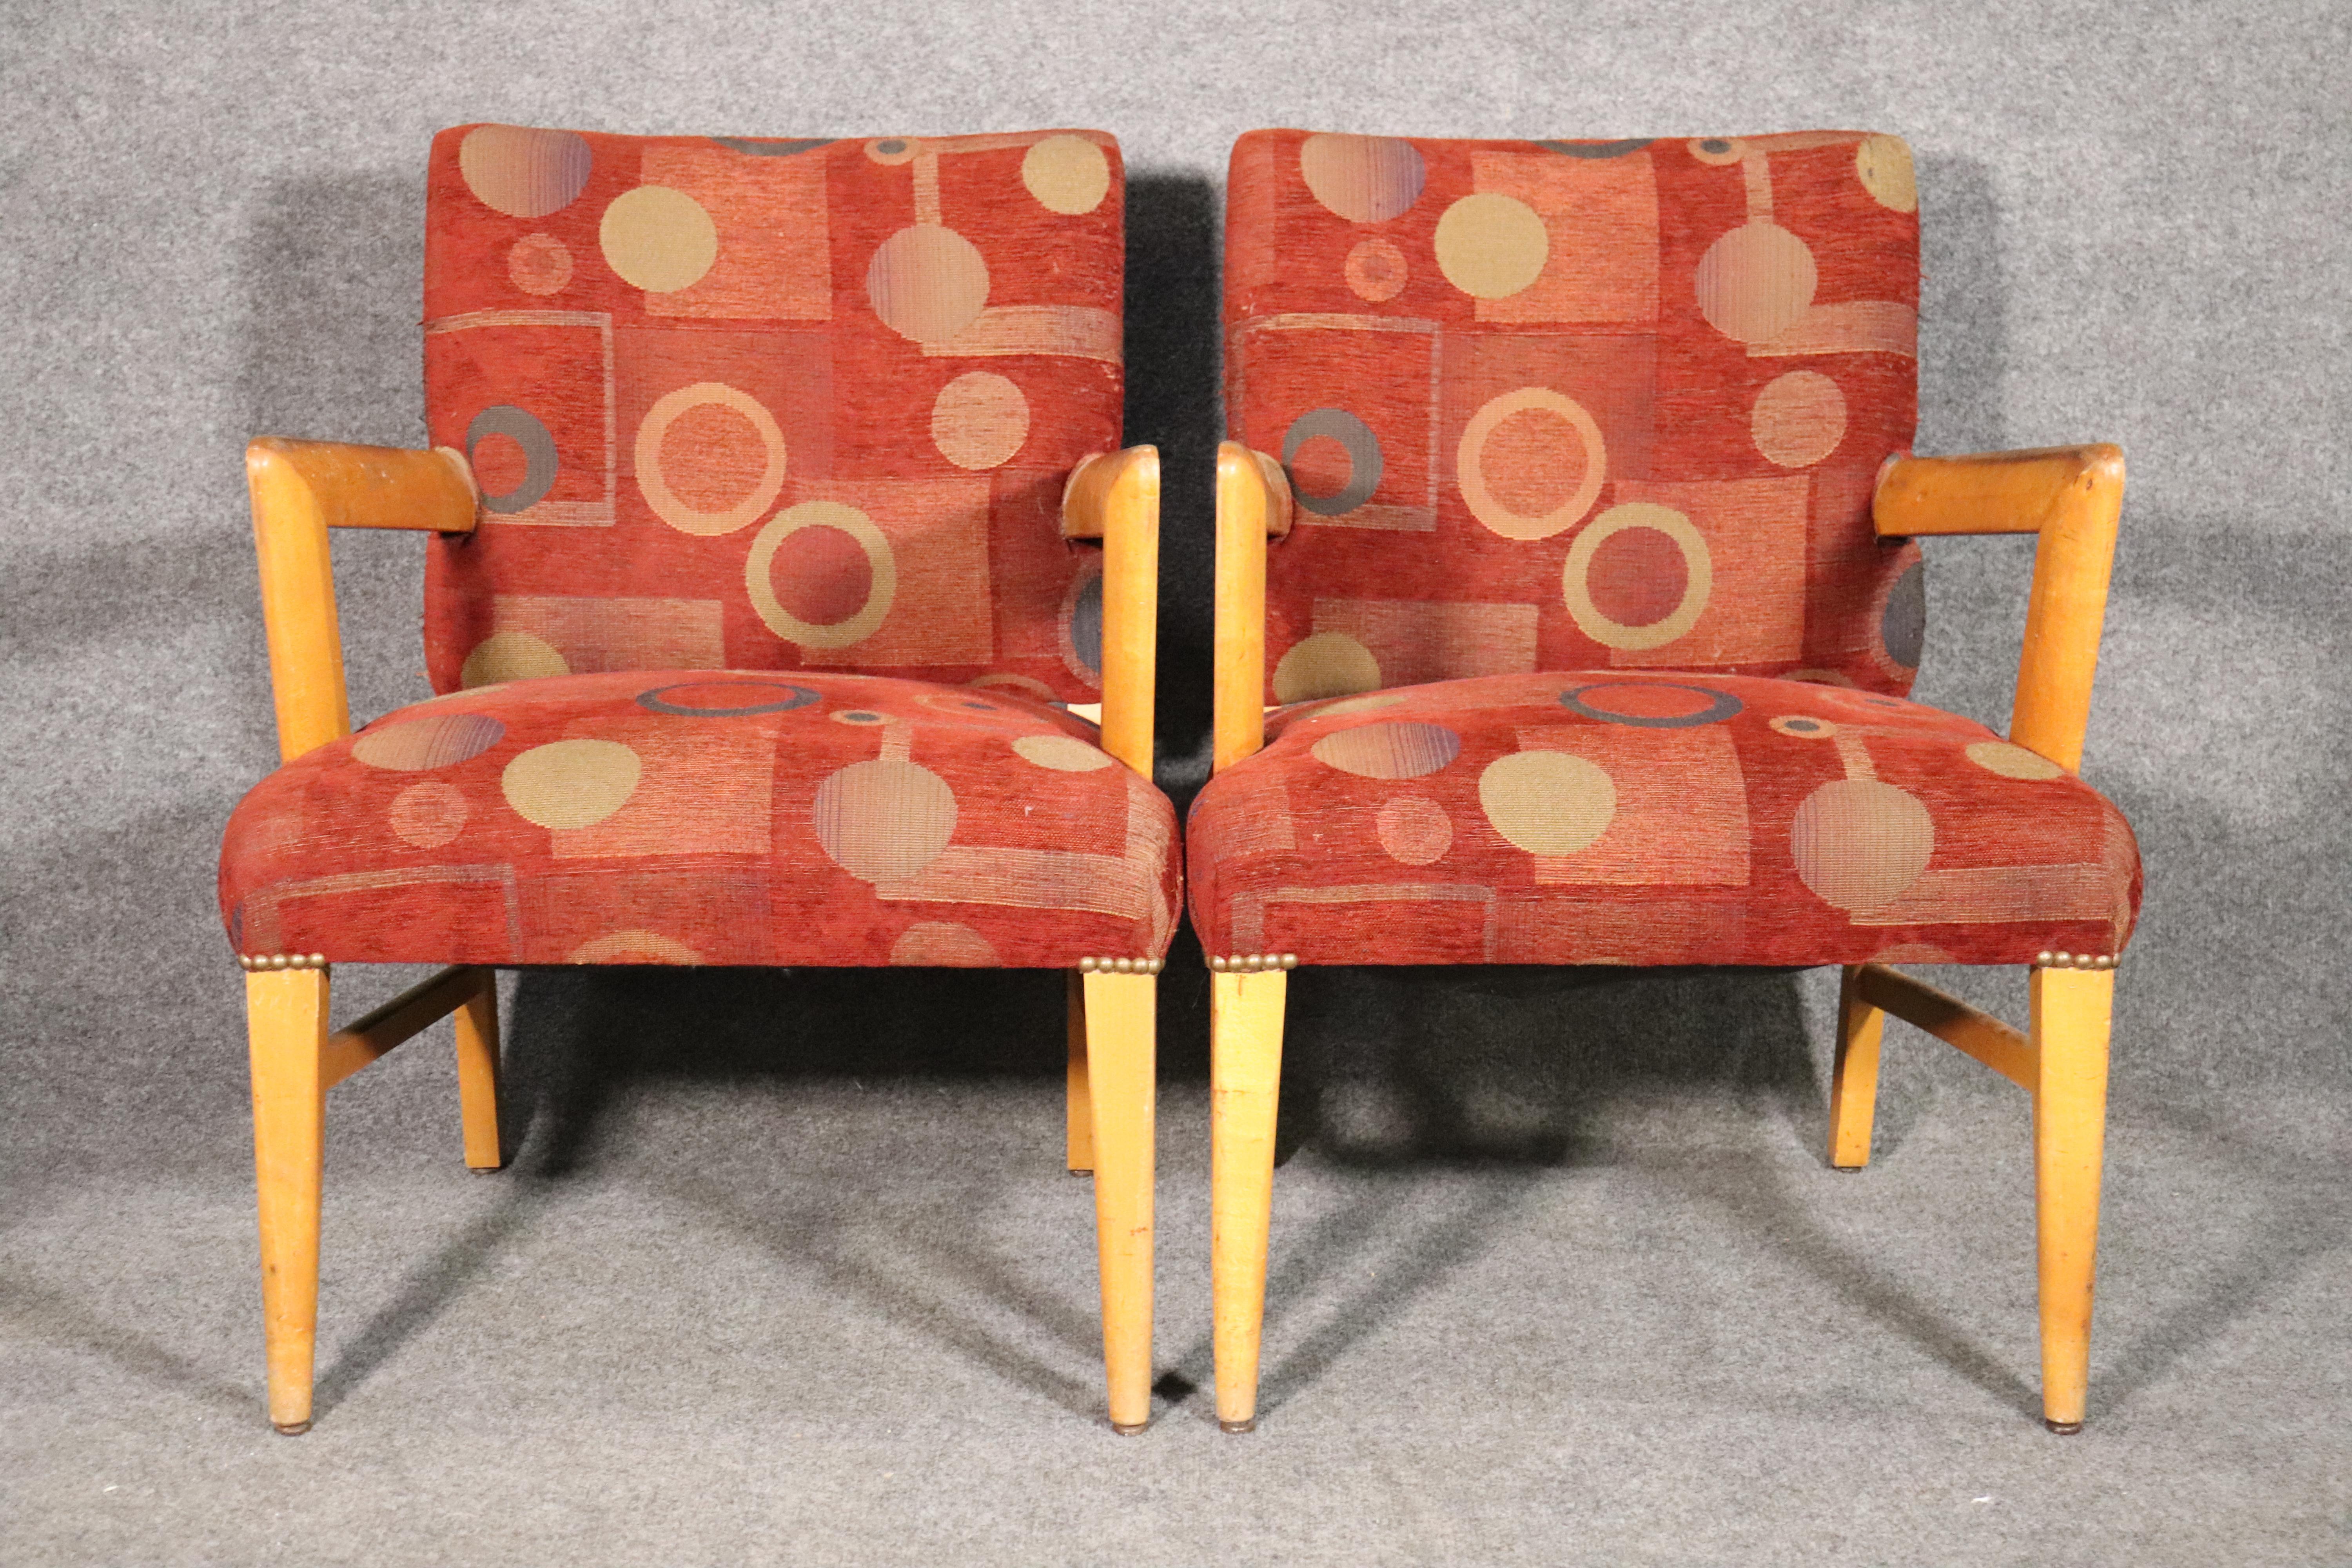 Zwei Sessel aus Ahornholz mit klaren Linien im Deco-Stil.
Bitte Standort bestätigen